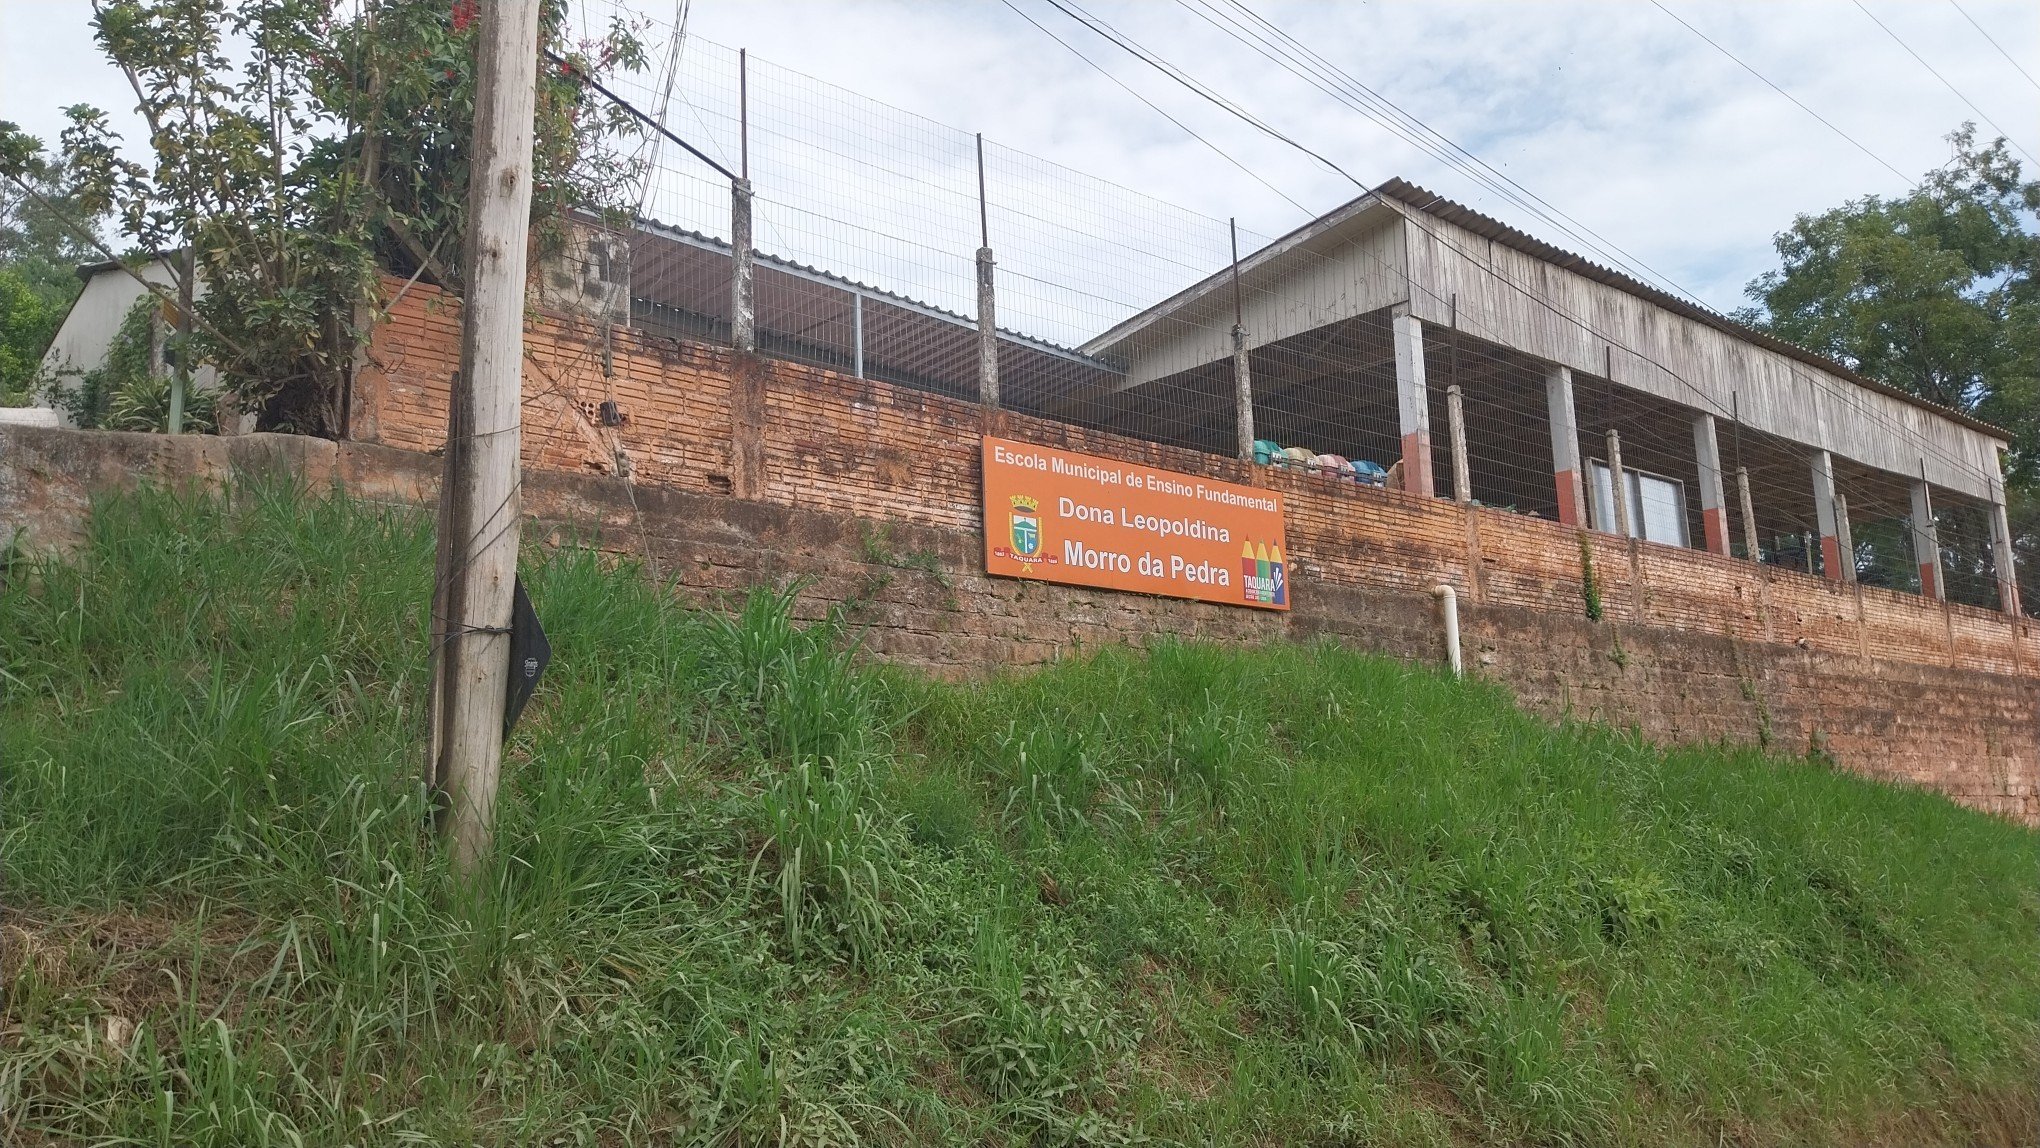 Após queda de ponte, prefeitura de Taquara contrata nova empresa para alunos da Dona Leopoldina